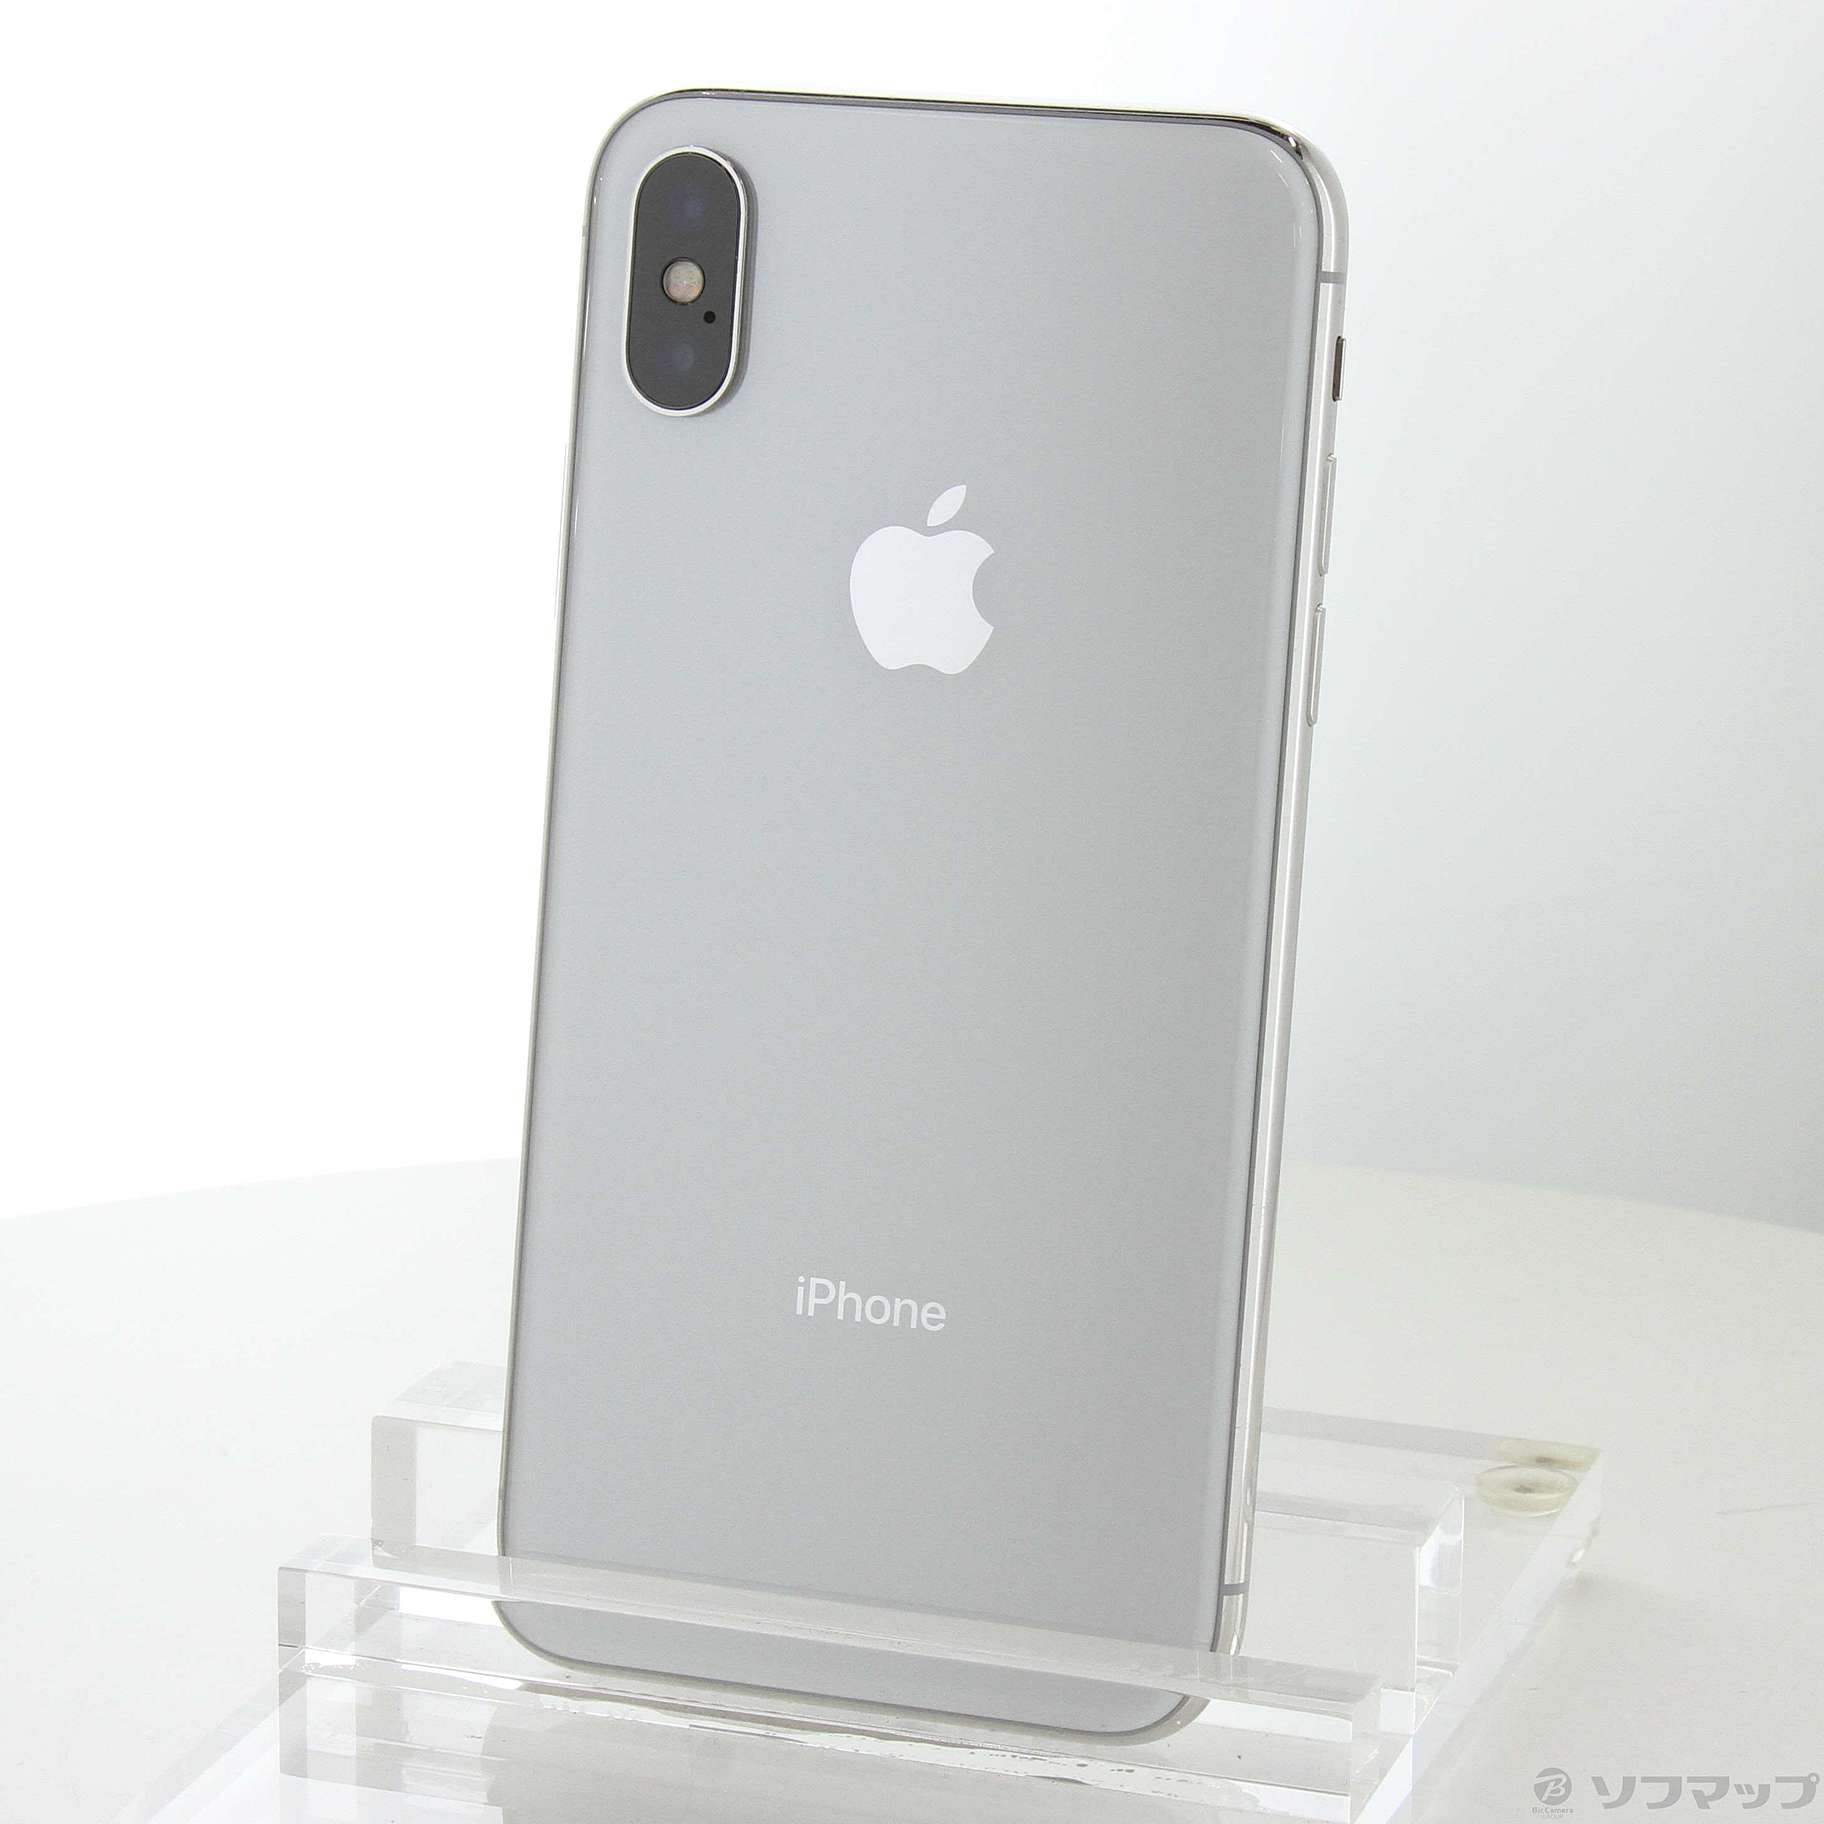 iPhoneX 64GB / silver